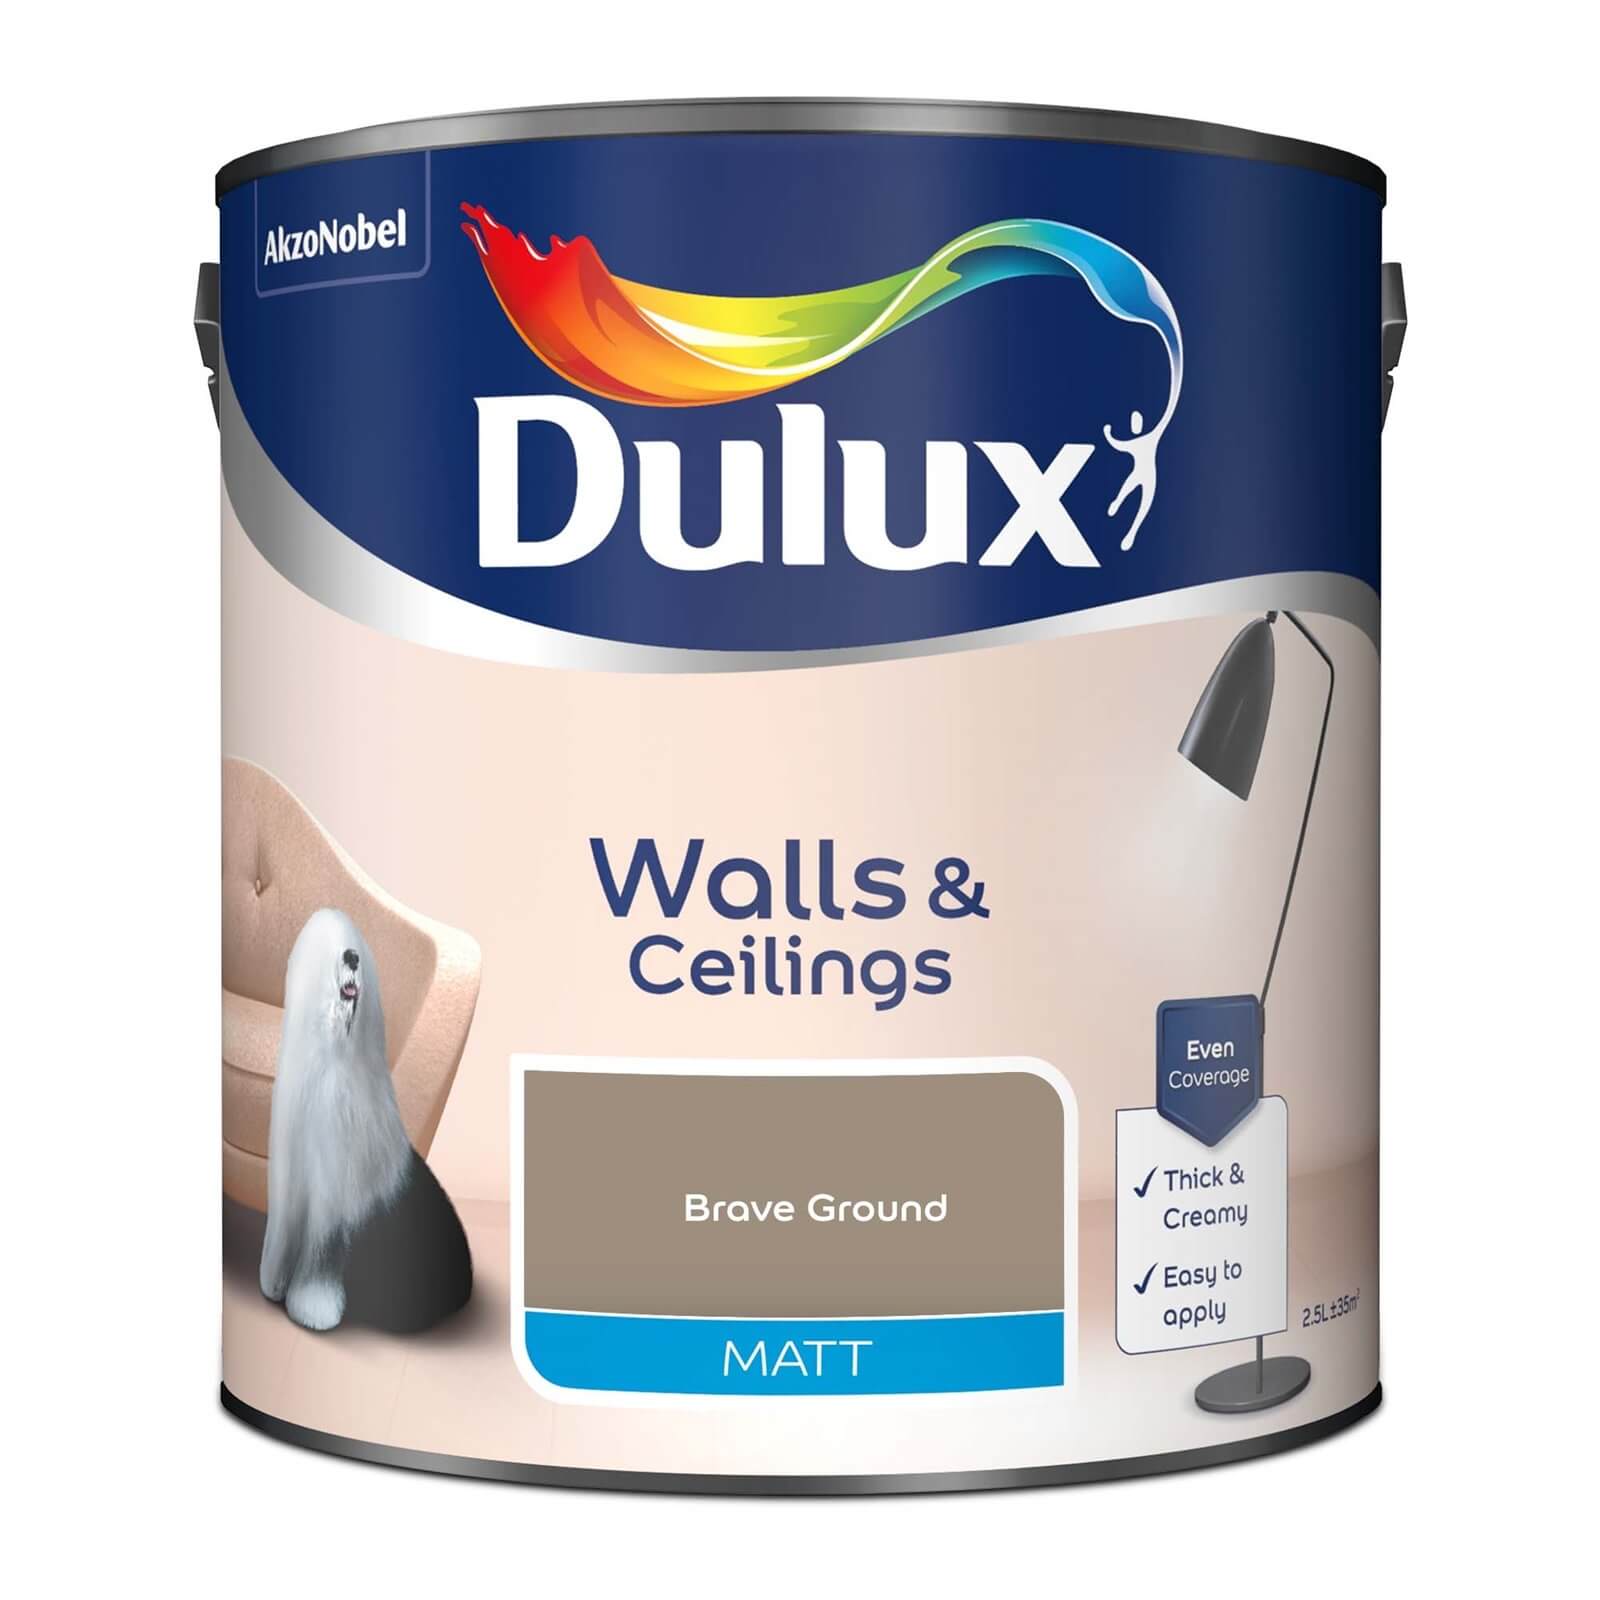 Dulux Brave Ground Matt Emulsion Paint - 2.5L